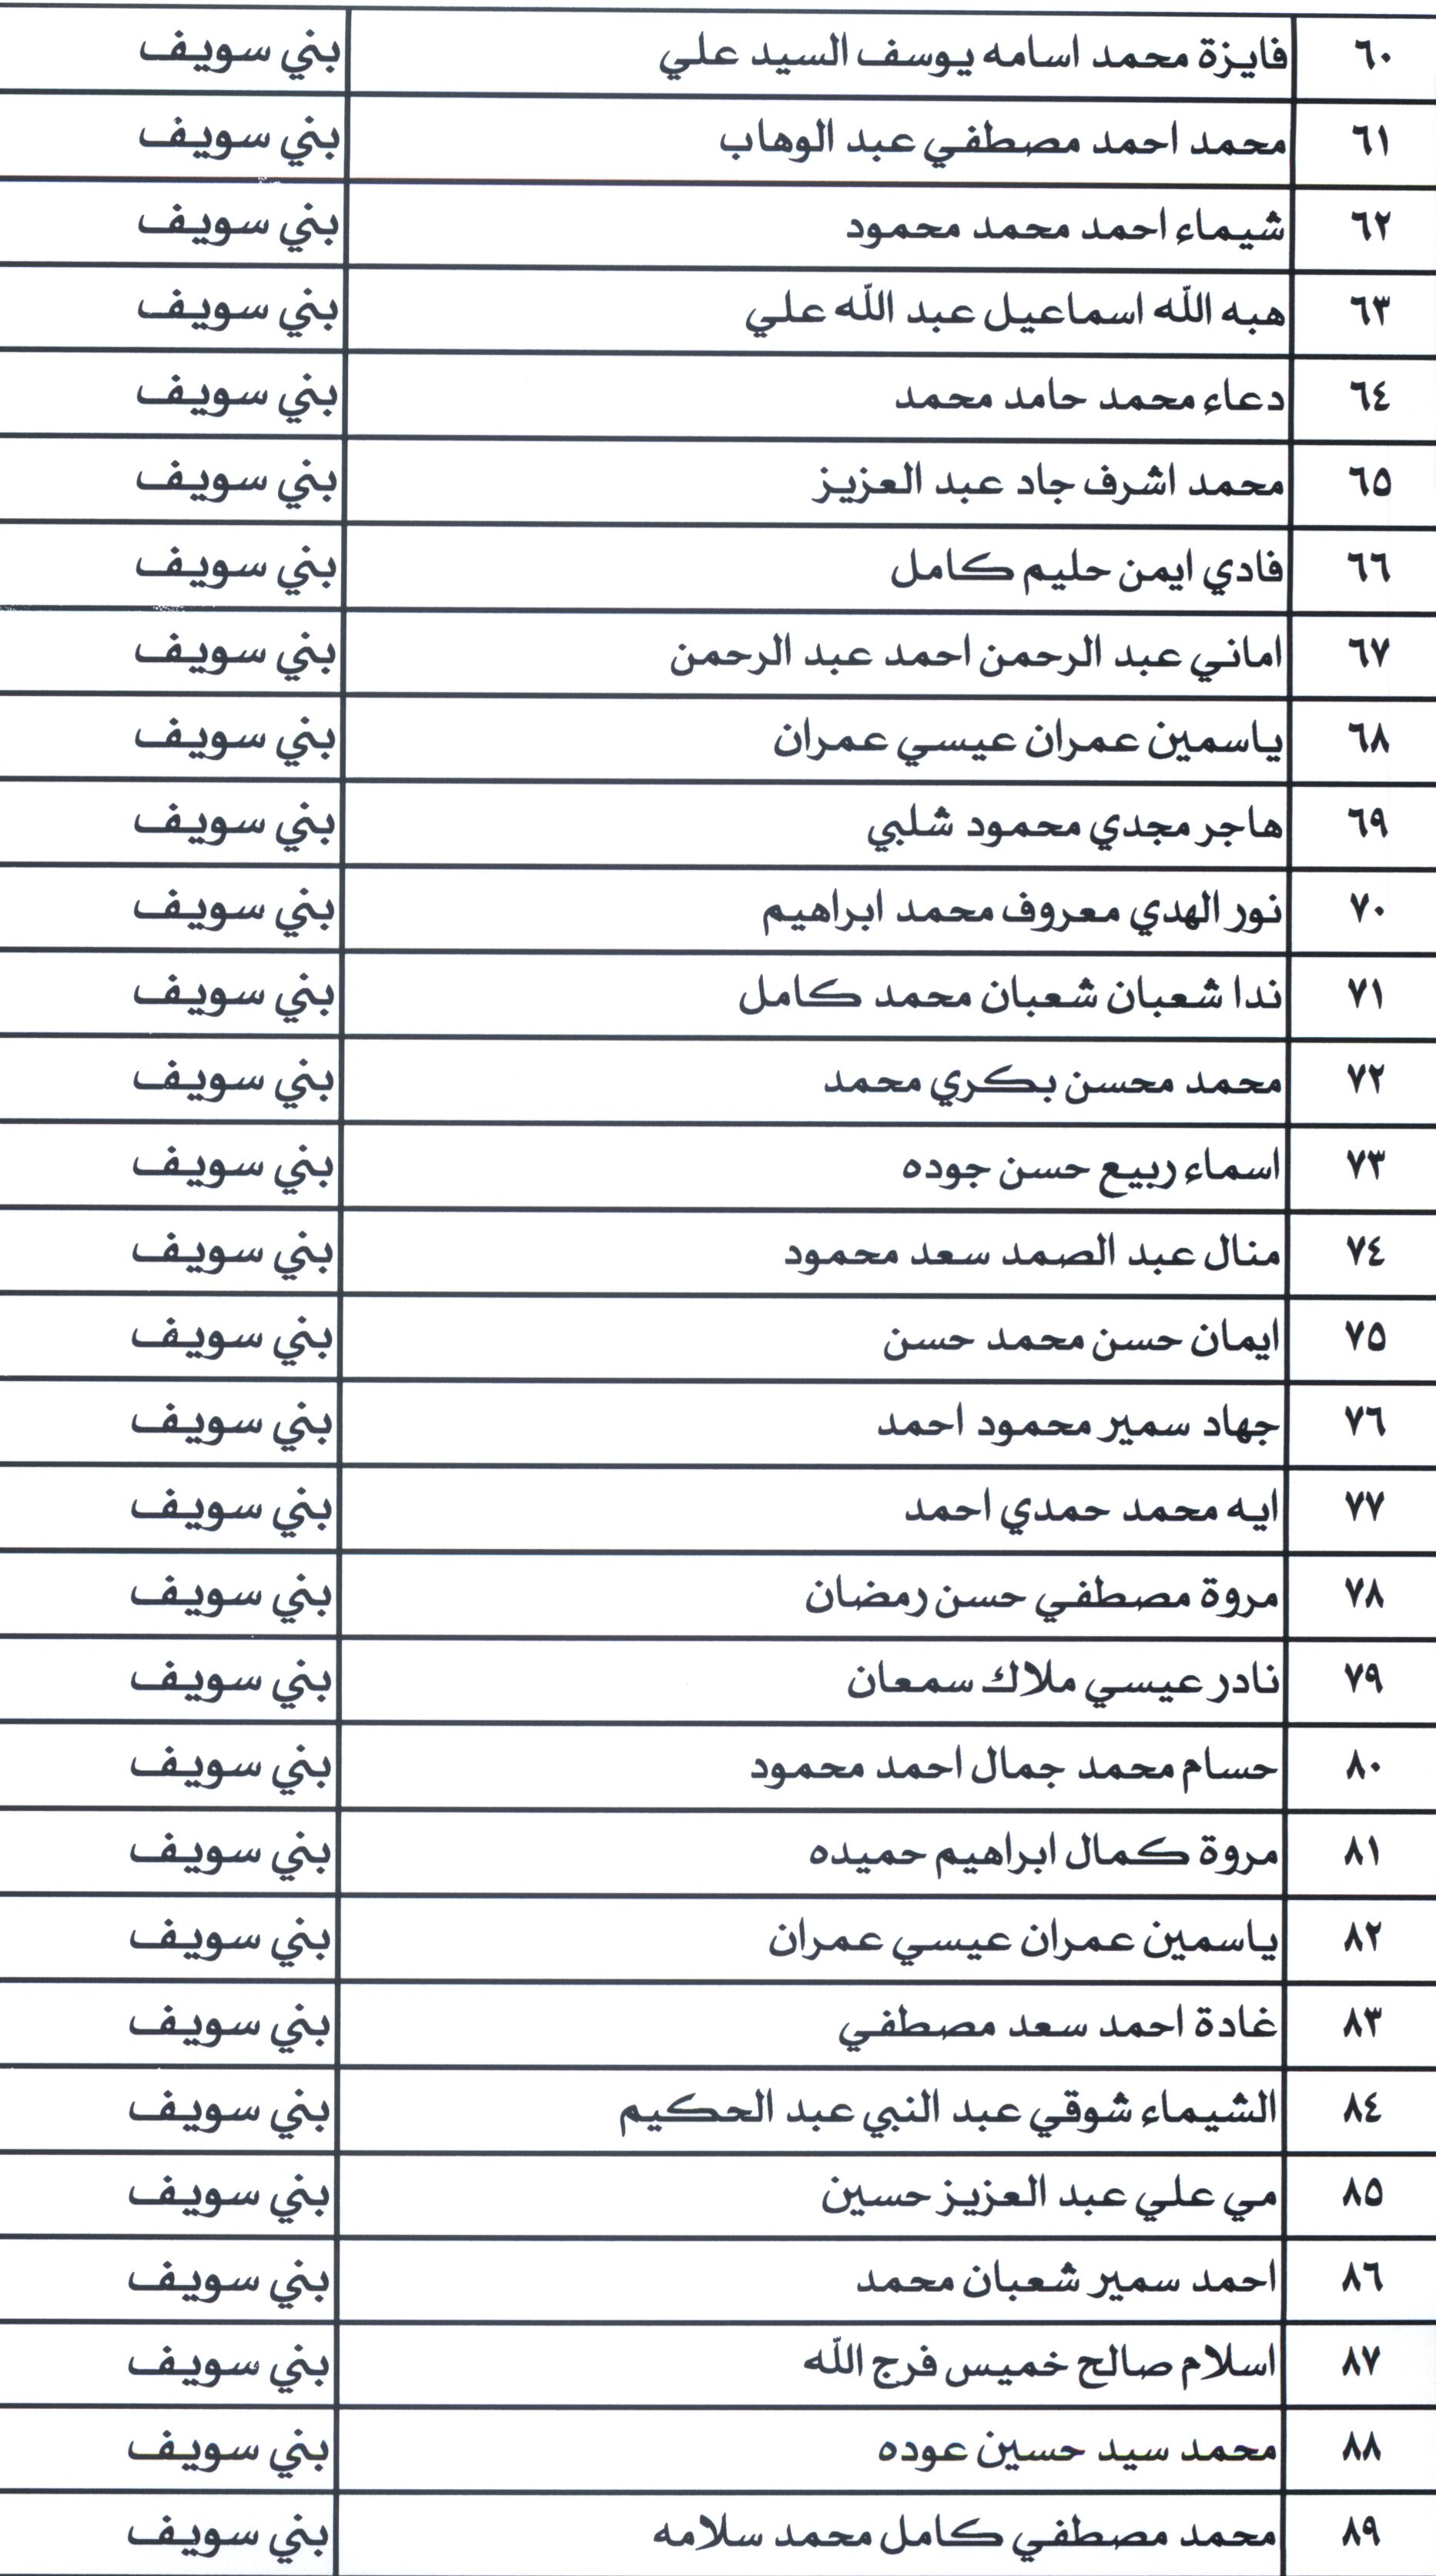 أسماء مرشحى شغل الوظائف ببمحافظة بنى سويف (6)